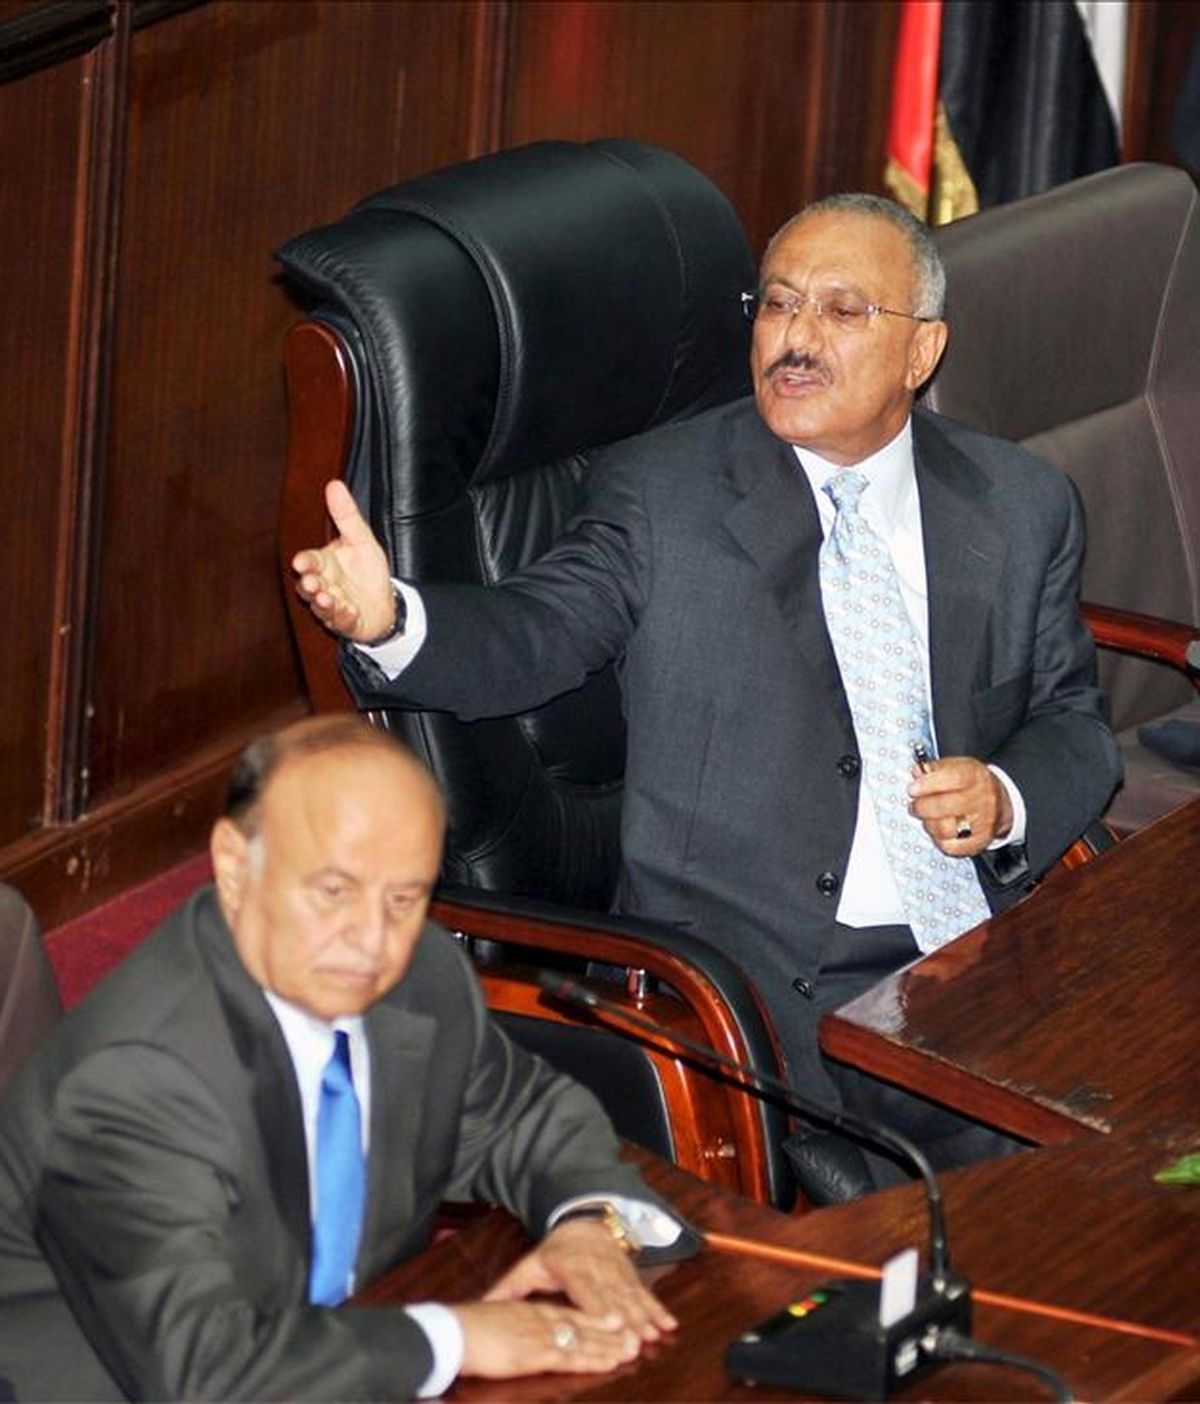 El presidente yemení, Alí Abdalá Saleh (d), se dirige al parlamento en medio de las protestas de la oposición contra su régimen en Saná, Yemen, hoy miércoles, 2 de febrero de 2011. Saleh anunció hoy que renuncia introducir enmiendas en la Constitución que le permitirían perpetuarse en el poder. EFE